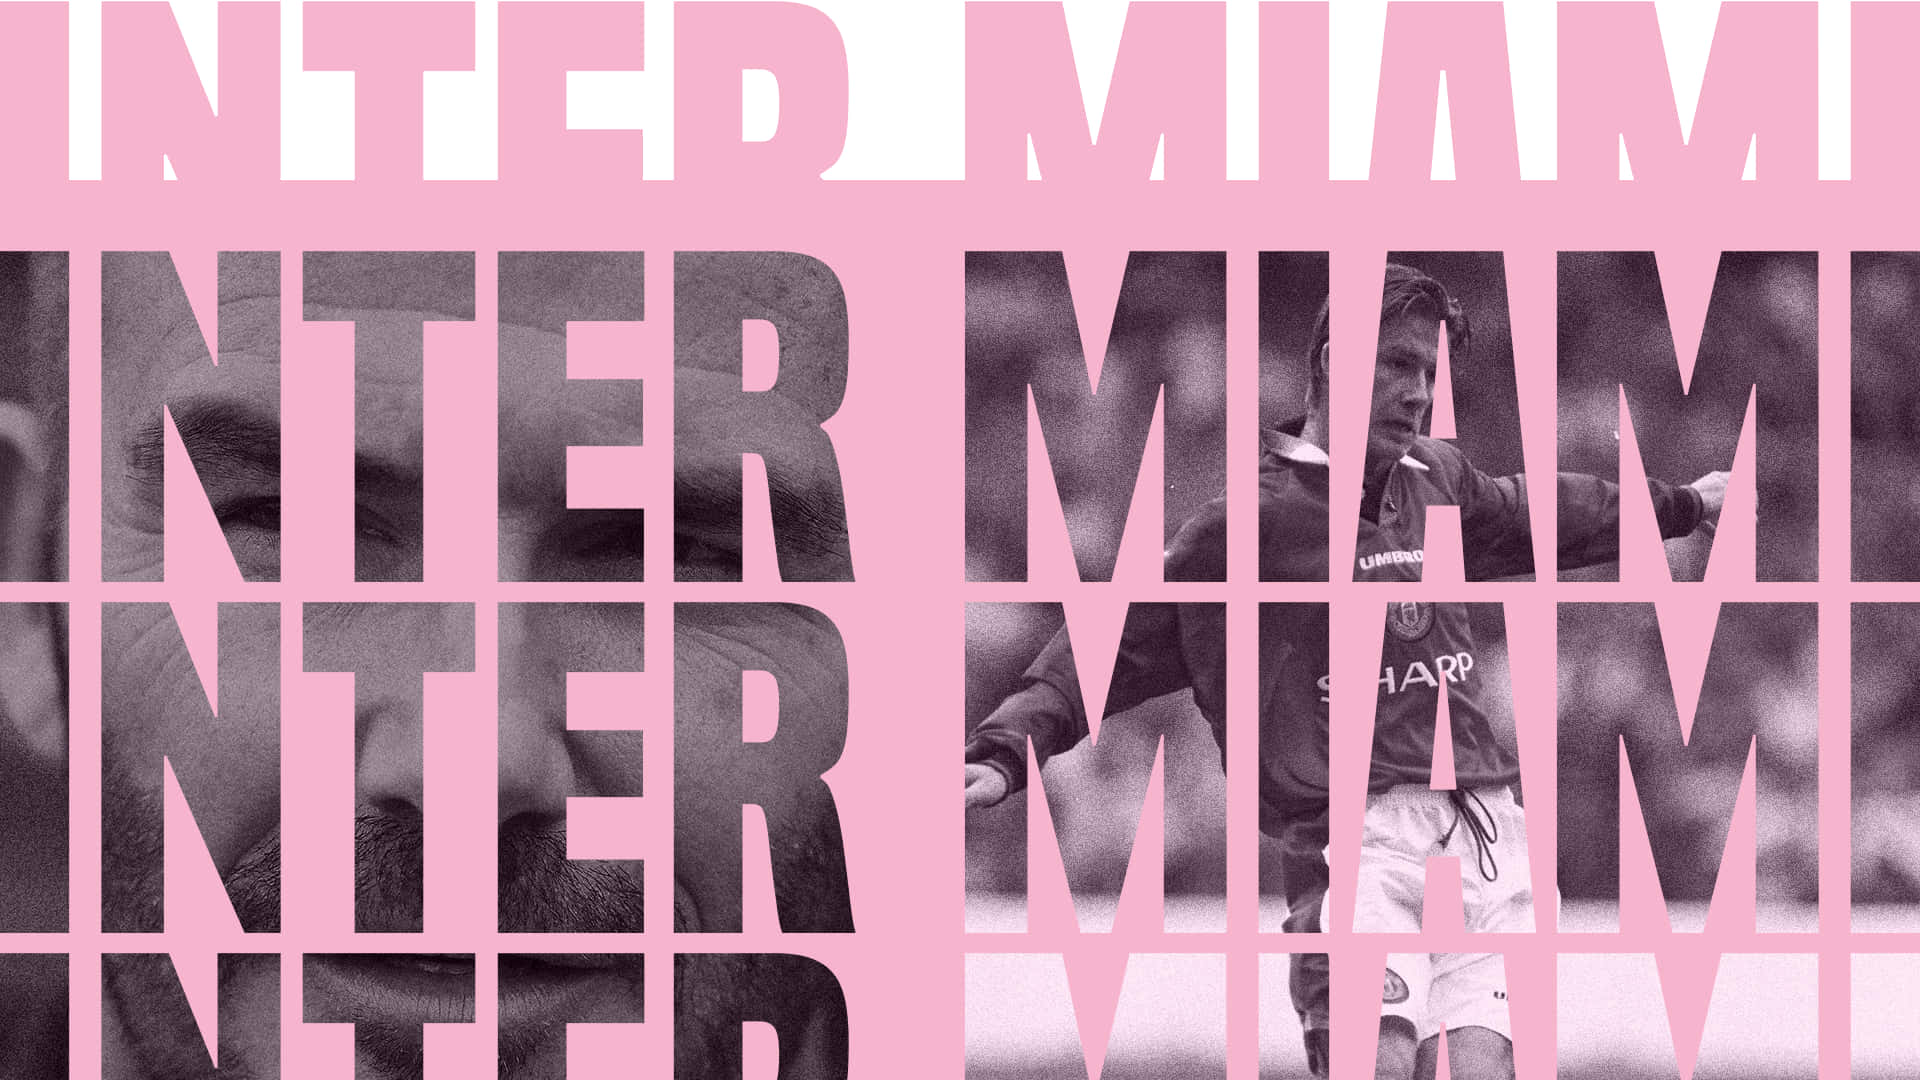 Tapet til Inter Miami FC Typografi Kunst: Fejr den stolte organisation og støt Inter Miami FC med dette officielle klublogopapir. Wallpaper